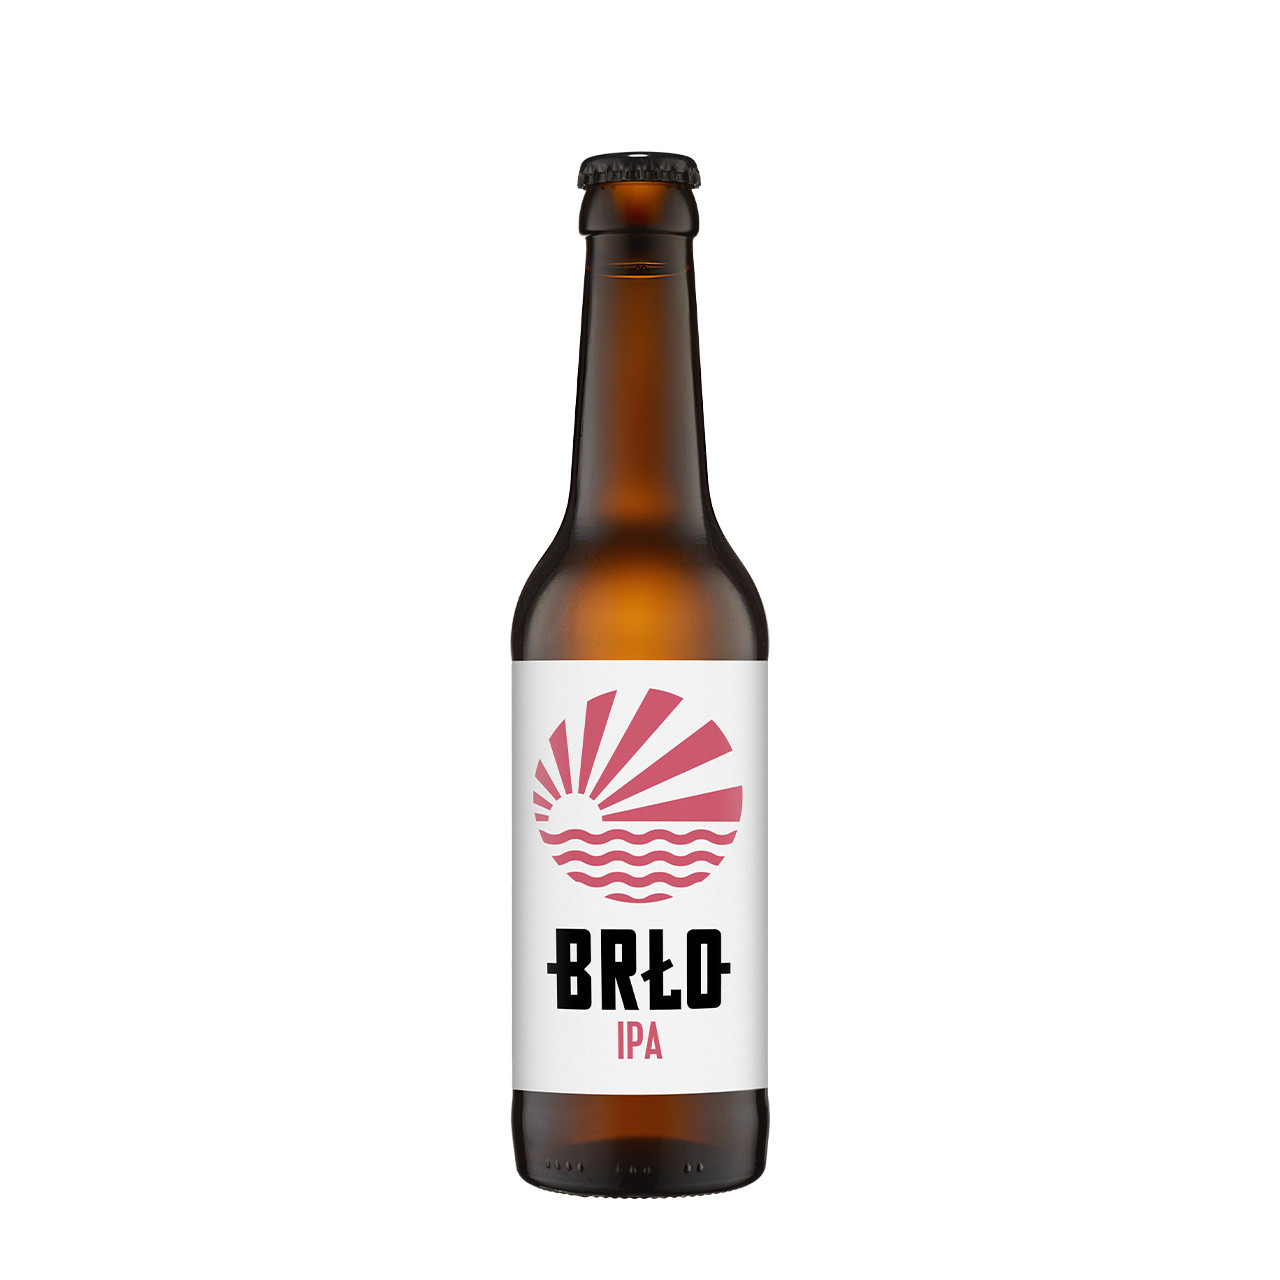 BRLO IPA fles 33cl. Is het IPA bier van BRLO met 6.0% alcohol